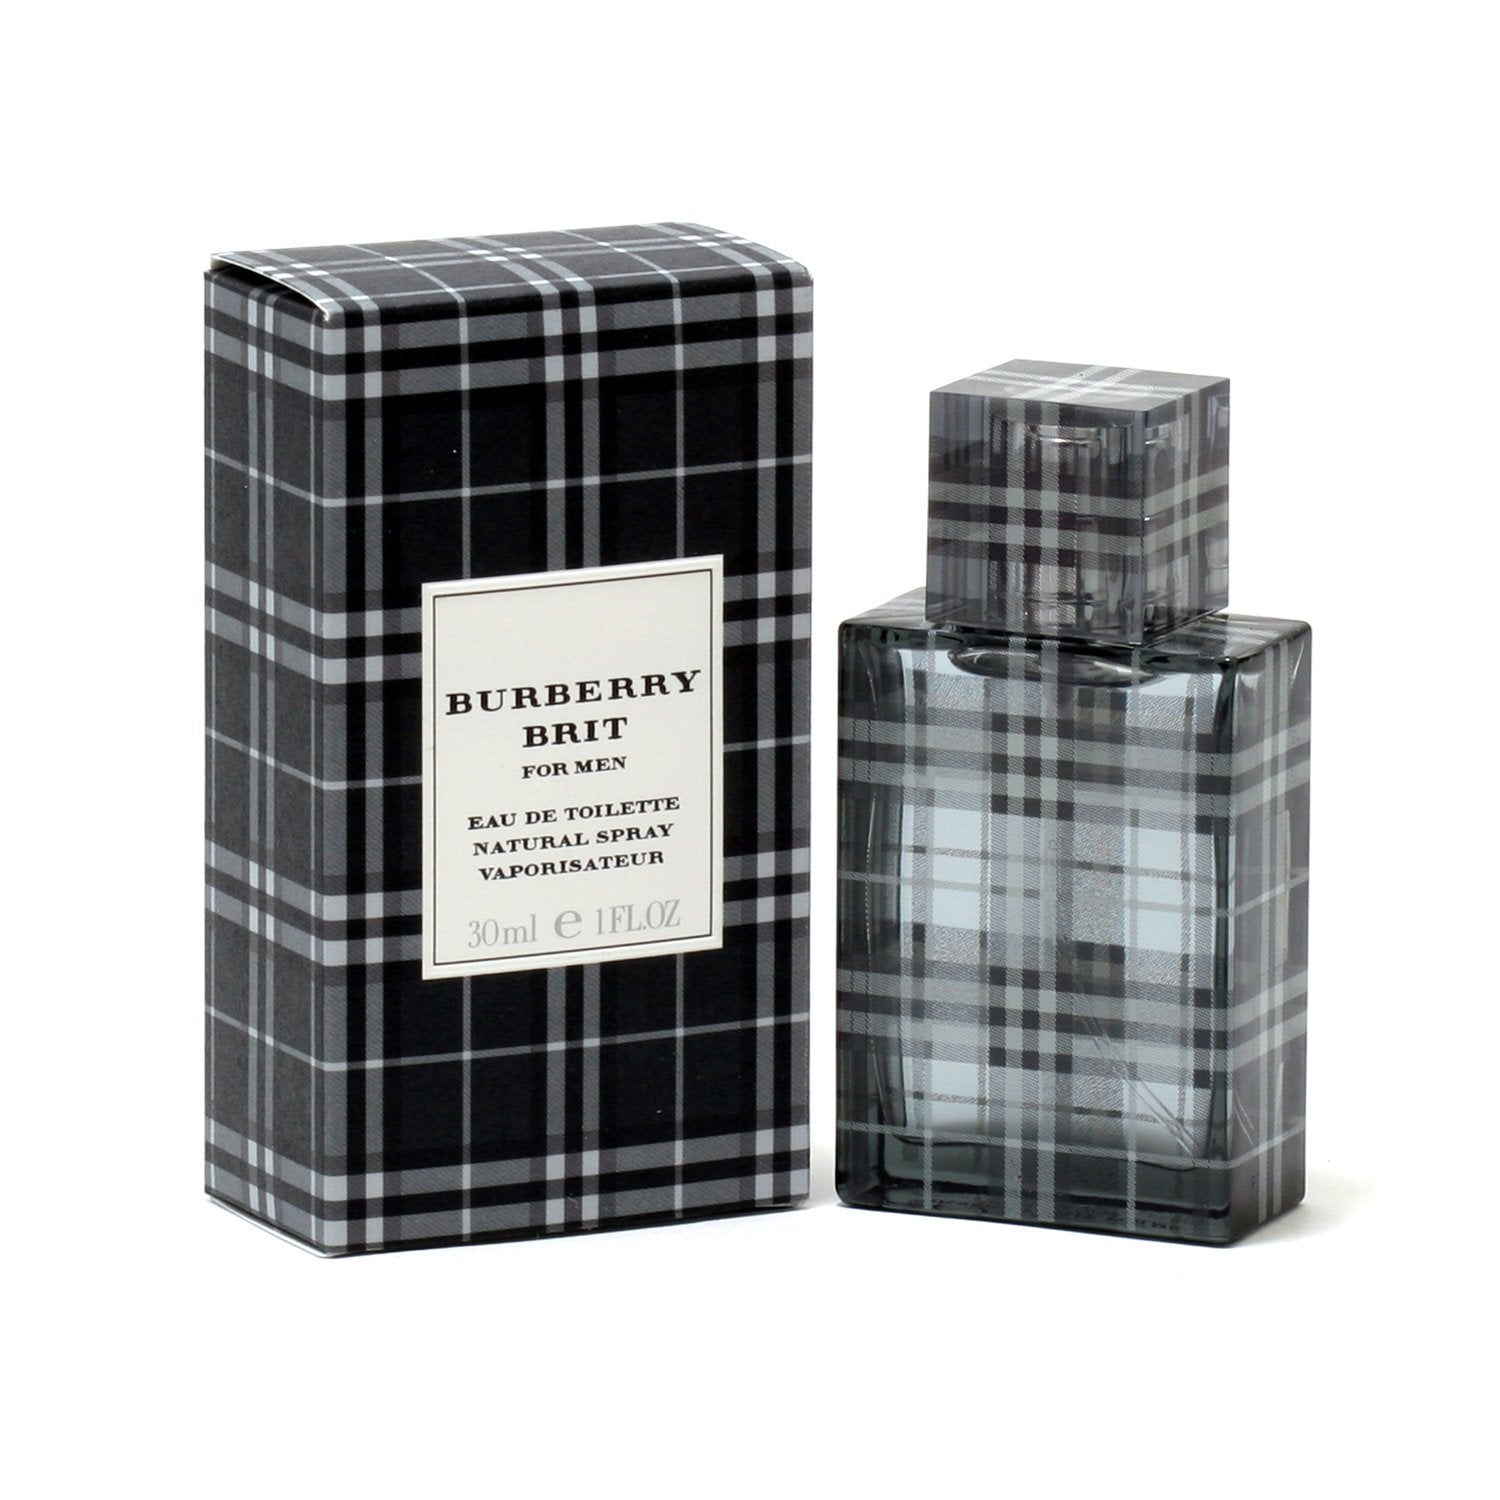 BURBERRY BRIT FOR MEN - SPRAY – TOILETTE Room Fragrance EAU DE